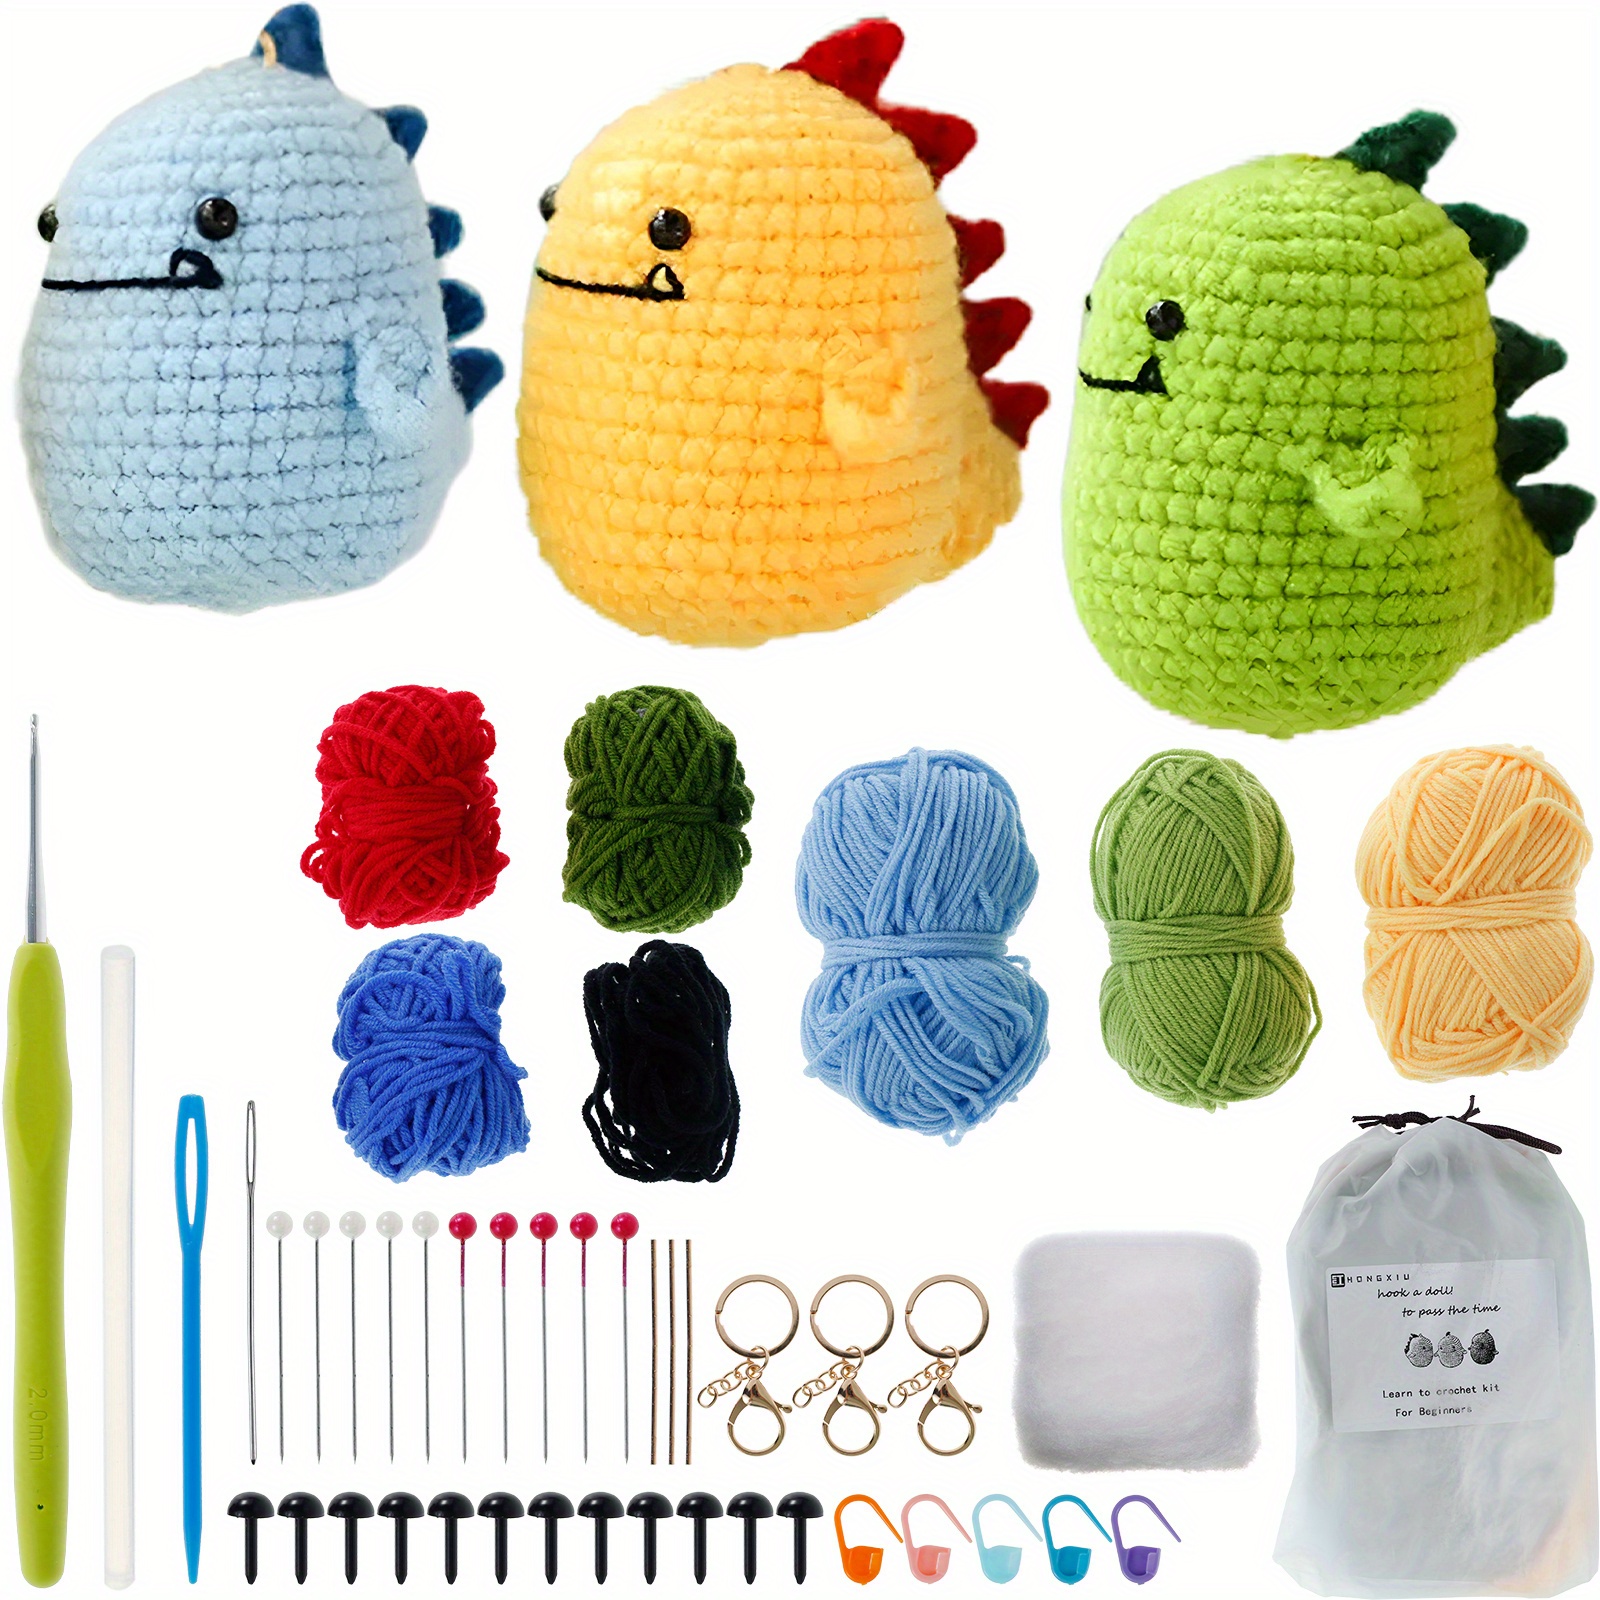  Crochet Kit for Beginner, Crochet Starter Kit w Step-by-Step  Video Tutorials, Crochet Kit for Beginners, Beginner Crochet Kit for Adults  Kids Women Men Complete Kit Included (Axolotl 2Pack)